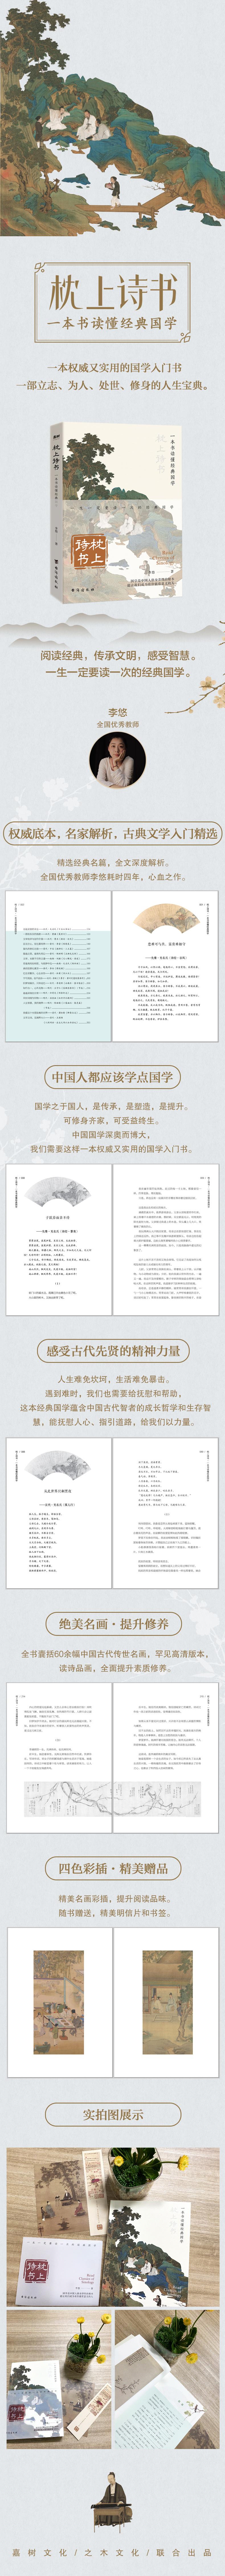 枕上诗书 一本书读懂经典国学 中国古典小说、诗词